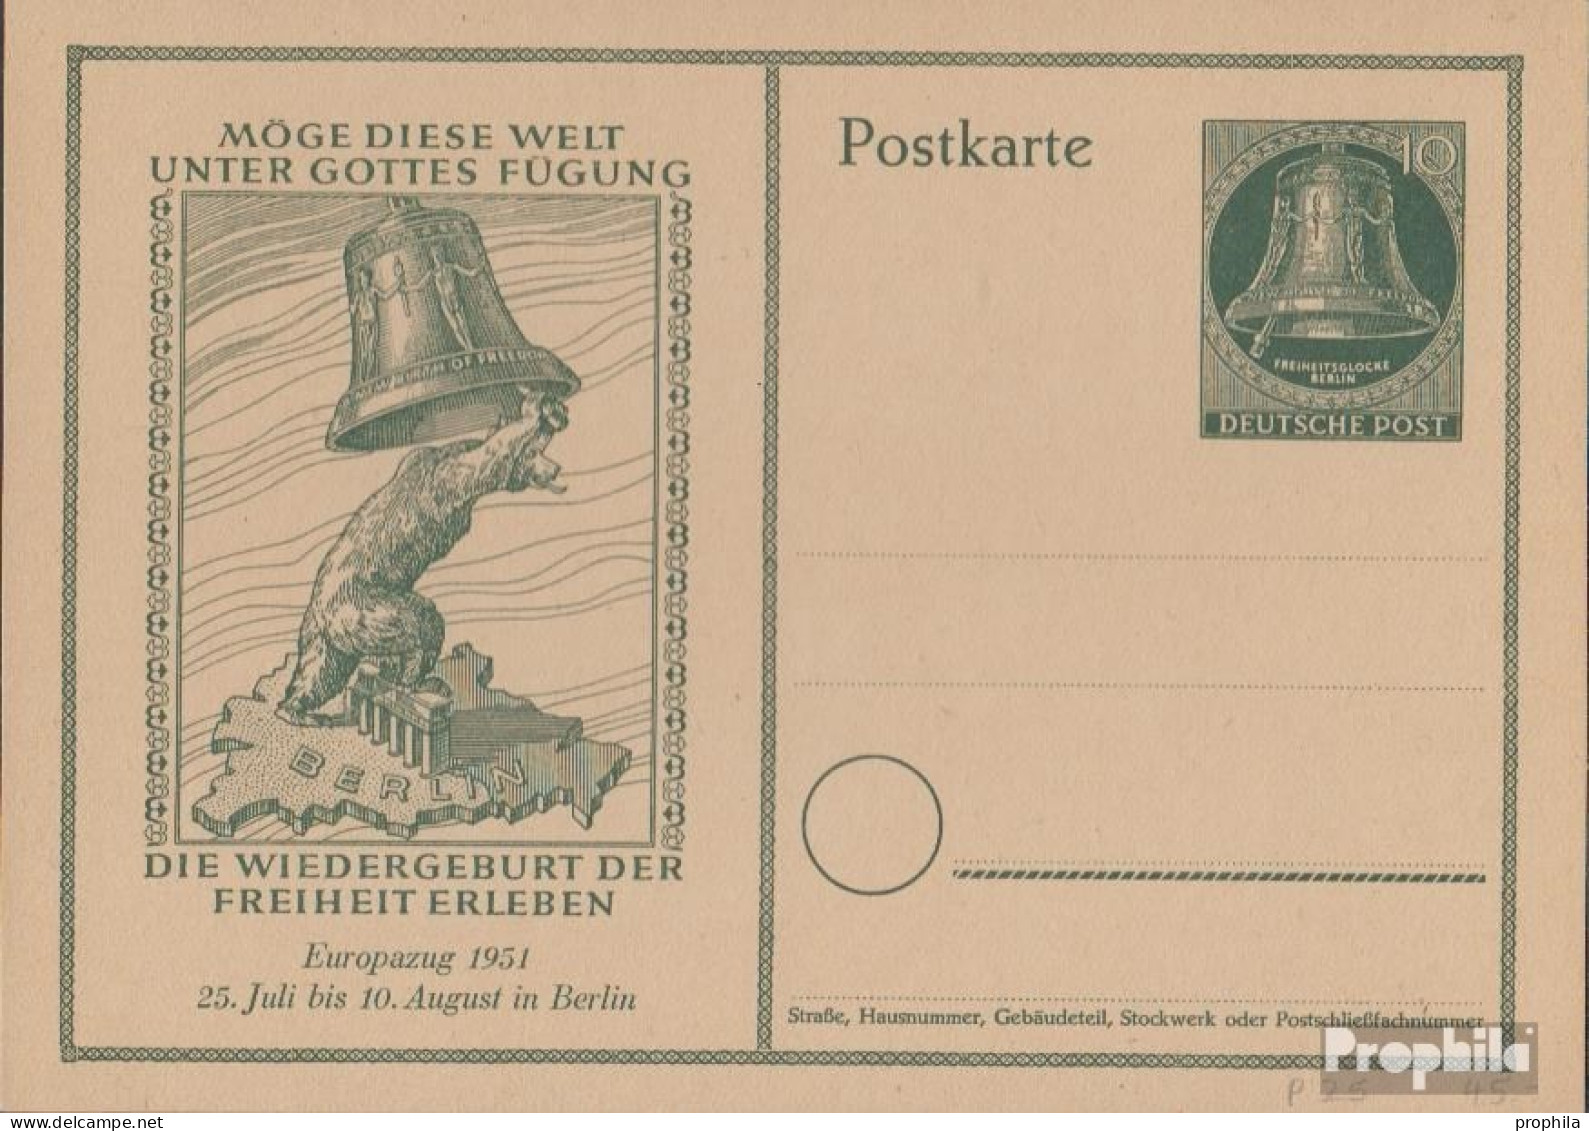 Berlin (West) P25 Amtliche Postkarte Gefälligkeitsgestempelt Gebraucht 1951 Glocke - Postcards - Used